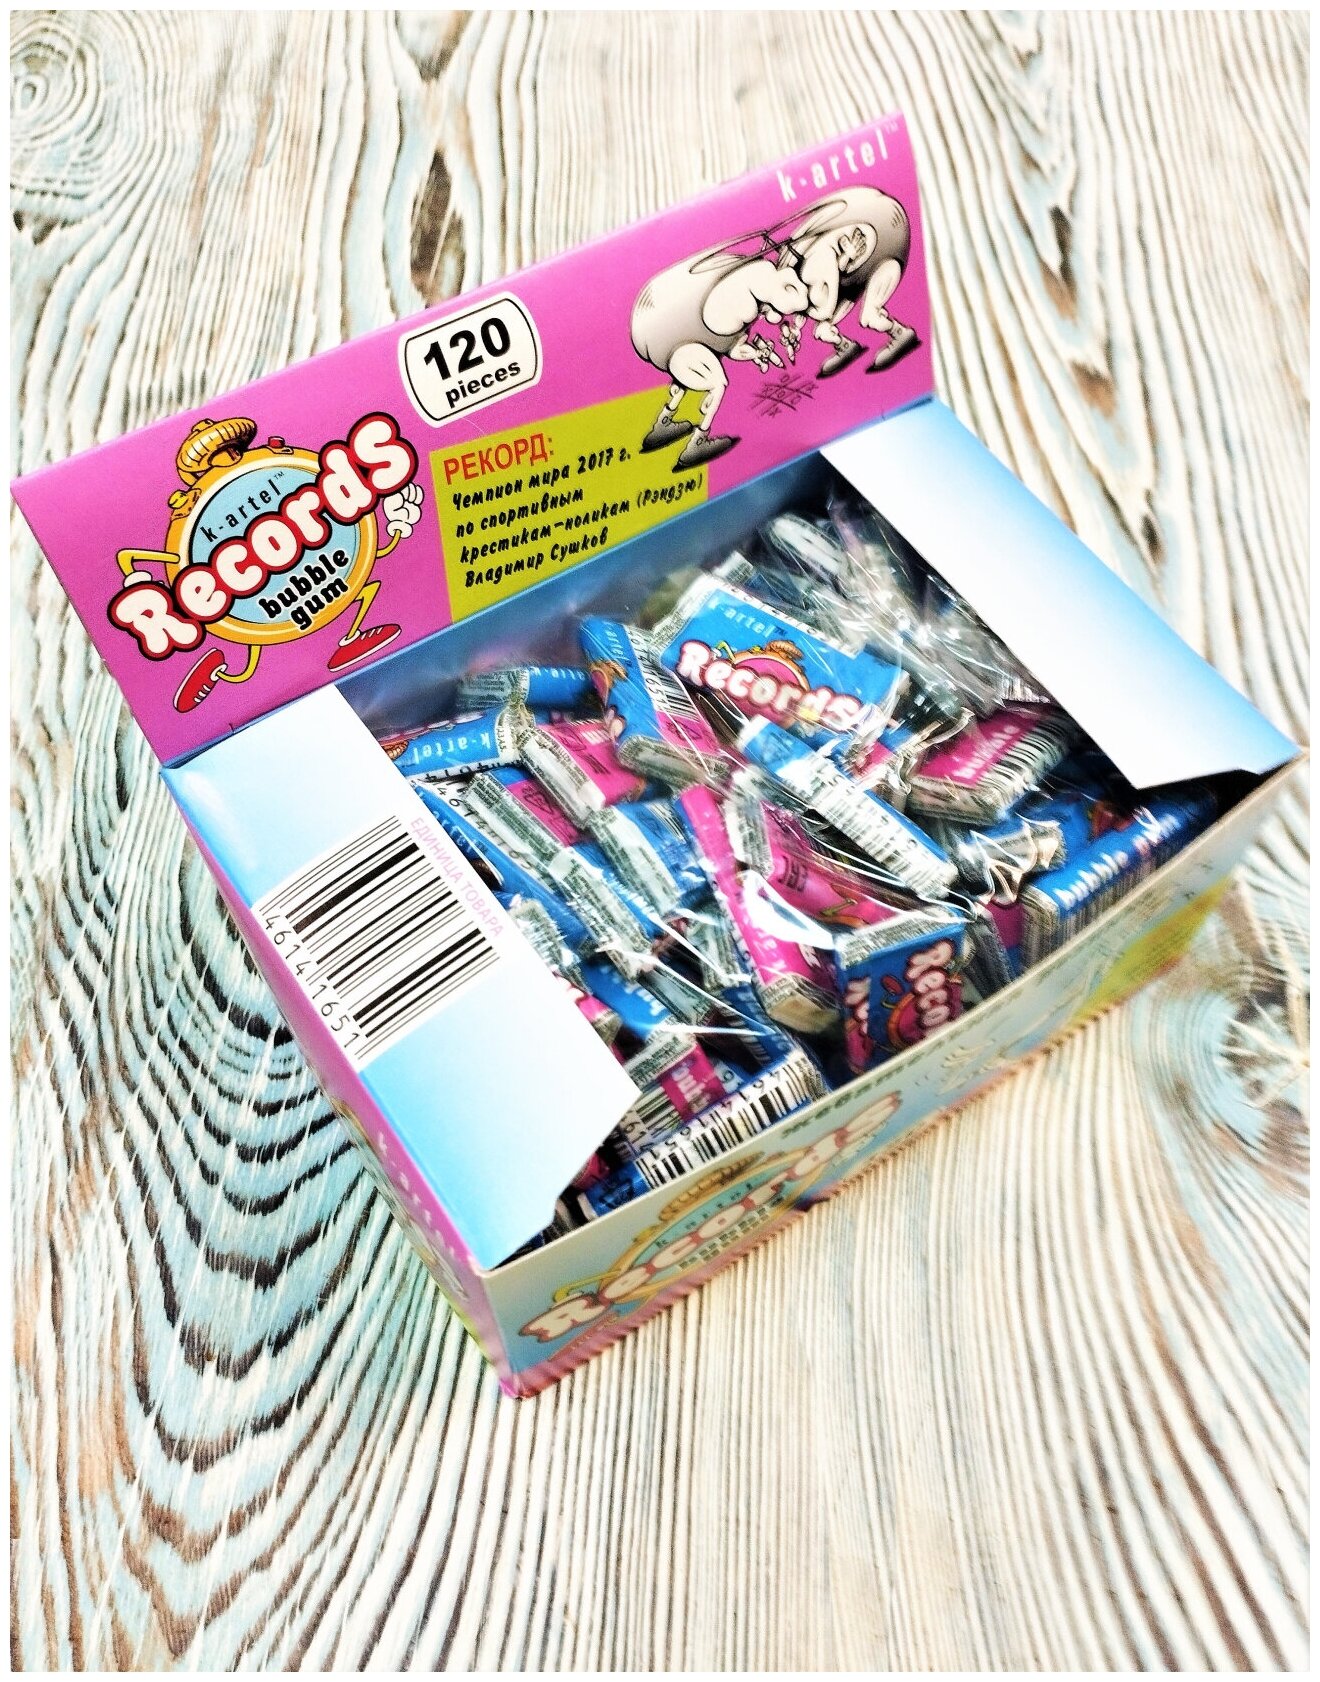 Жевательная резинка RECORDS Bubbble Gum, 120 штук